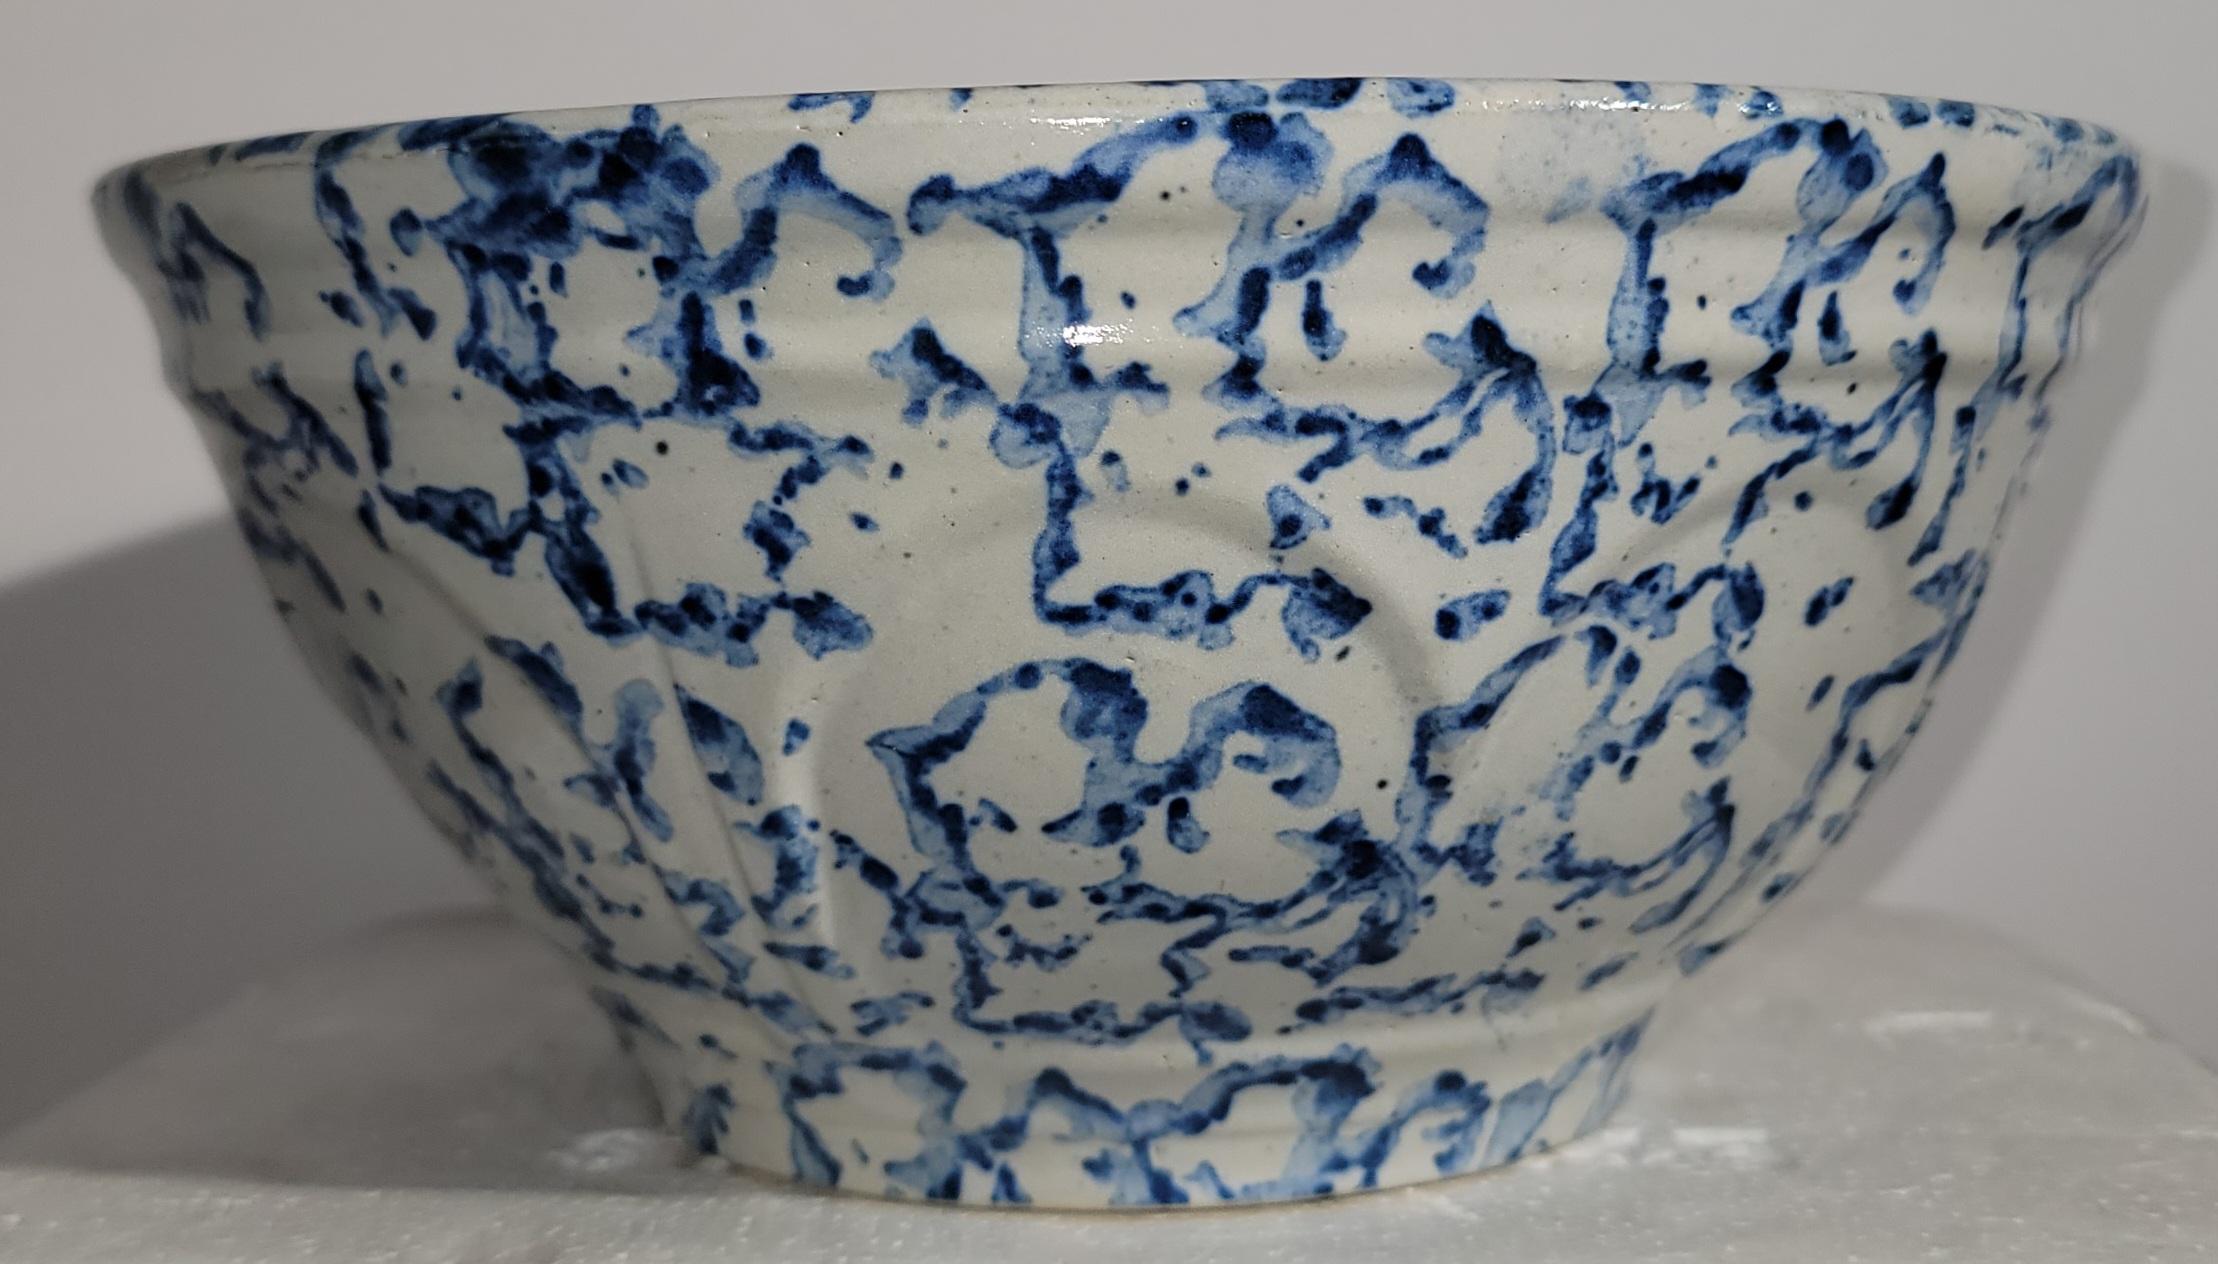 Schale aus Biskuit mit hellblauem Design aus dem 19. Jahrhundert. Die blaue Farbe ist nicht überwältigend, so dass die Hintergrundfarbe gezeigt werden kann. Es gibt eine gewellte Textur, die durch die Seiten geht. Wunderschön gearbeitete Schale mit